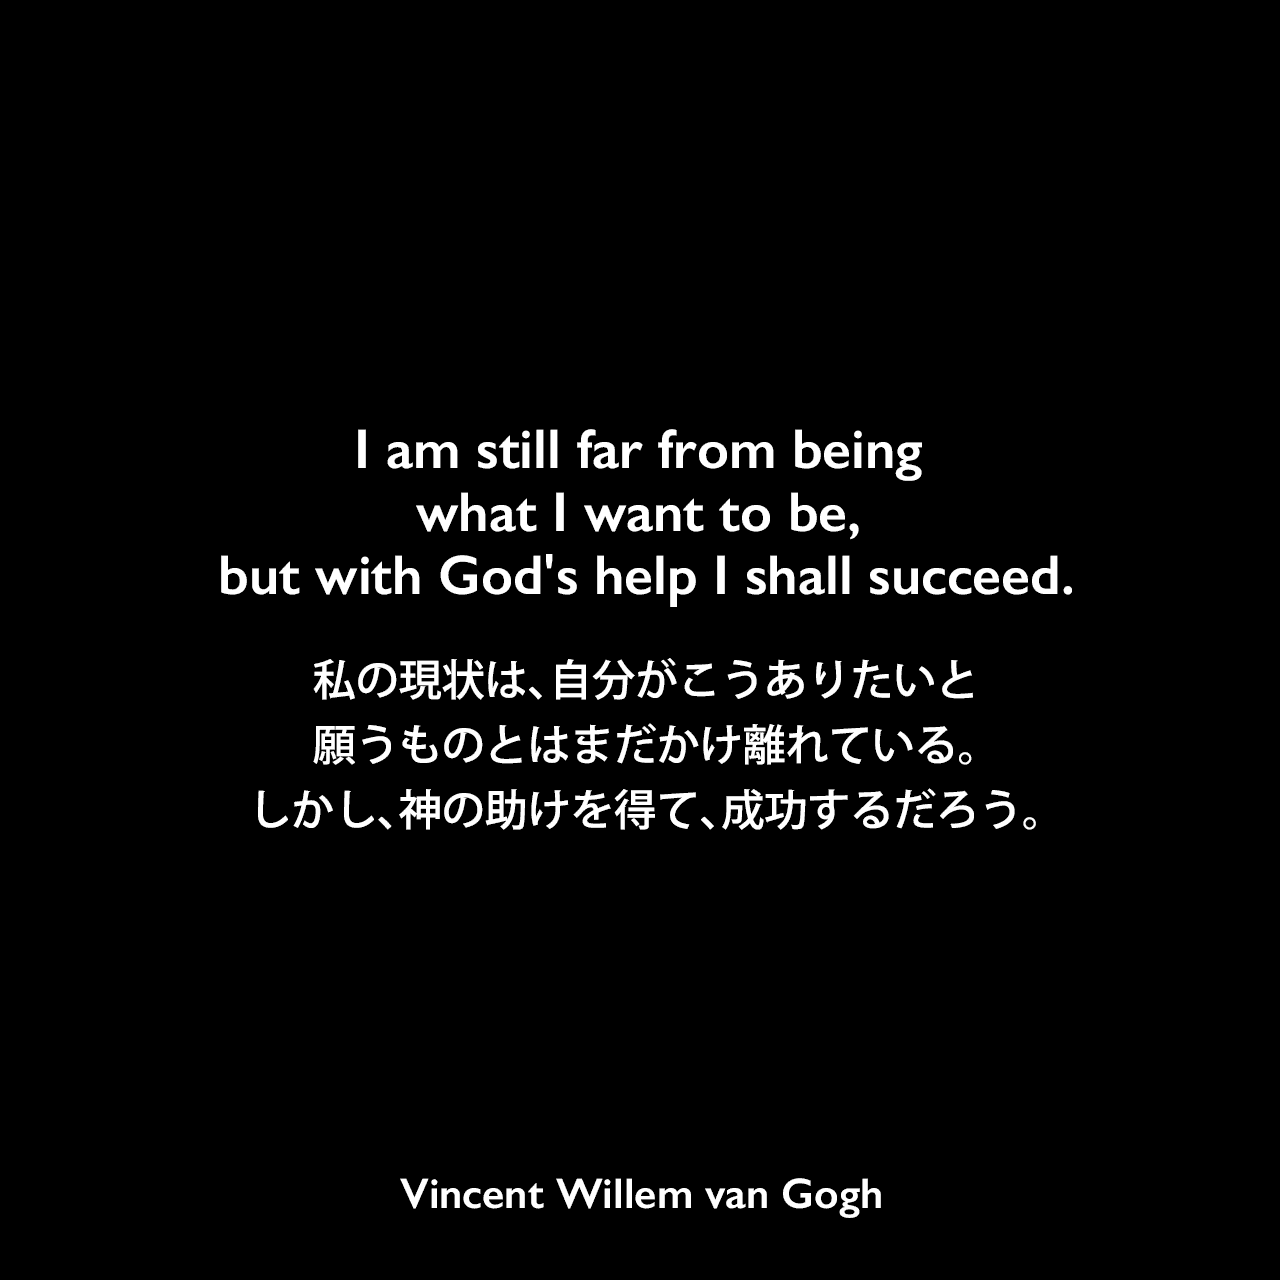 I am still far from being what I want to be, but with God's help I shall succeed.私の現状は、自分がこうありたいと願うものとはまだかけ離れている。しかし、神の助けを得て、成功するだろう。- ゴッホの弟テオへ宛てた手紙よりVincent Willem van Gogh